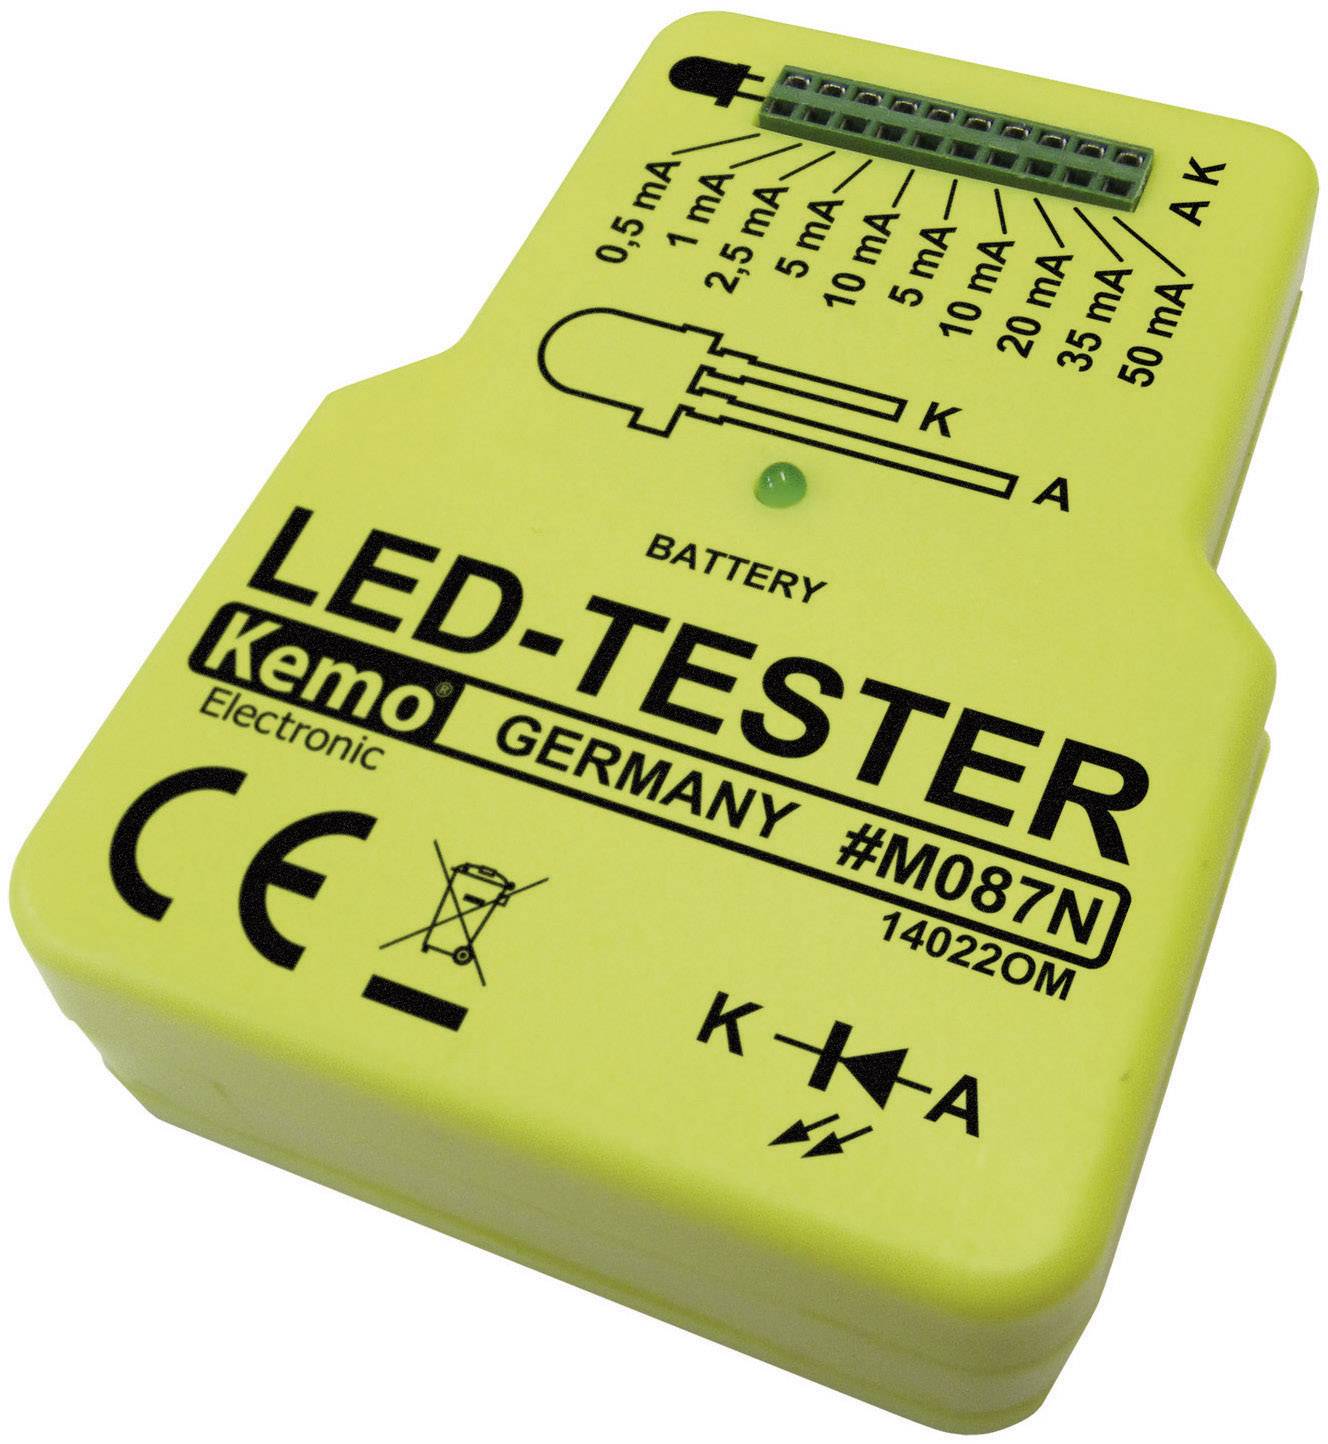 KEMO LED Tester Baustein Kemo M087N 9 V/DC